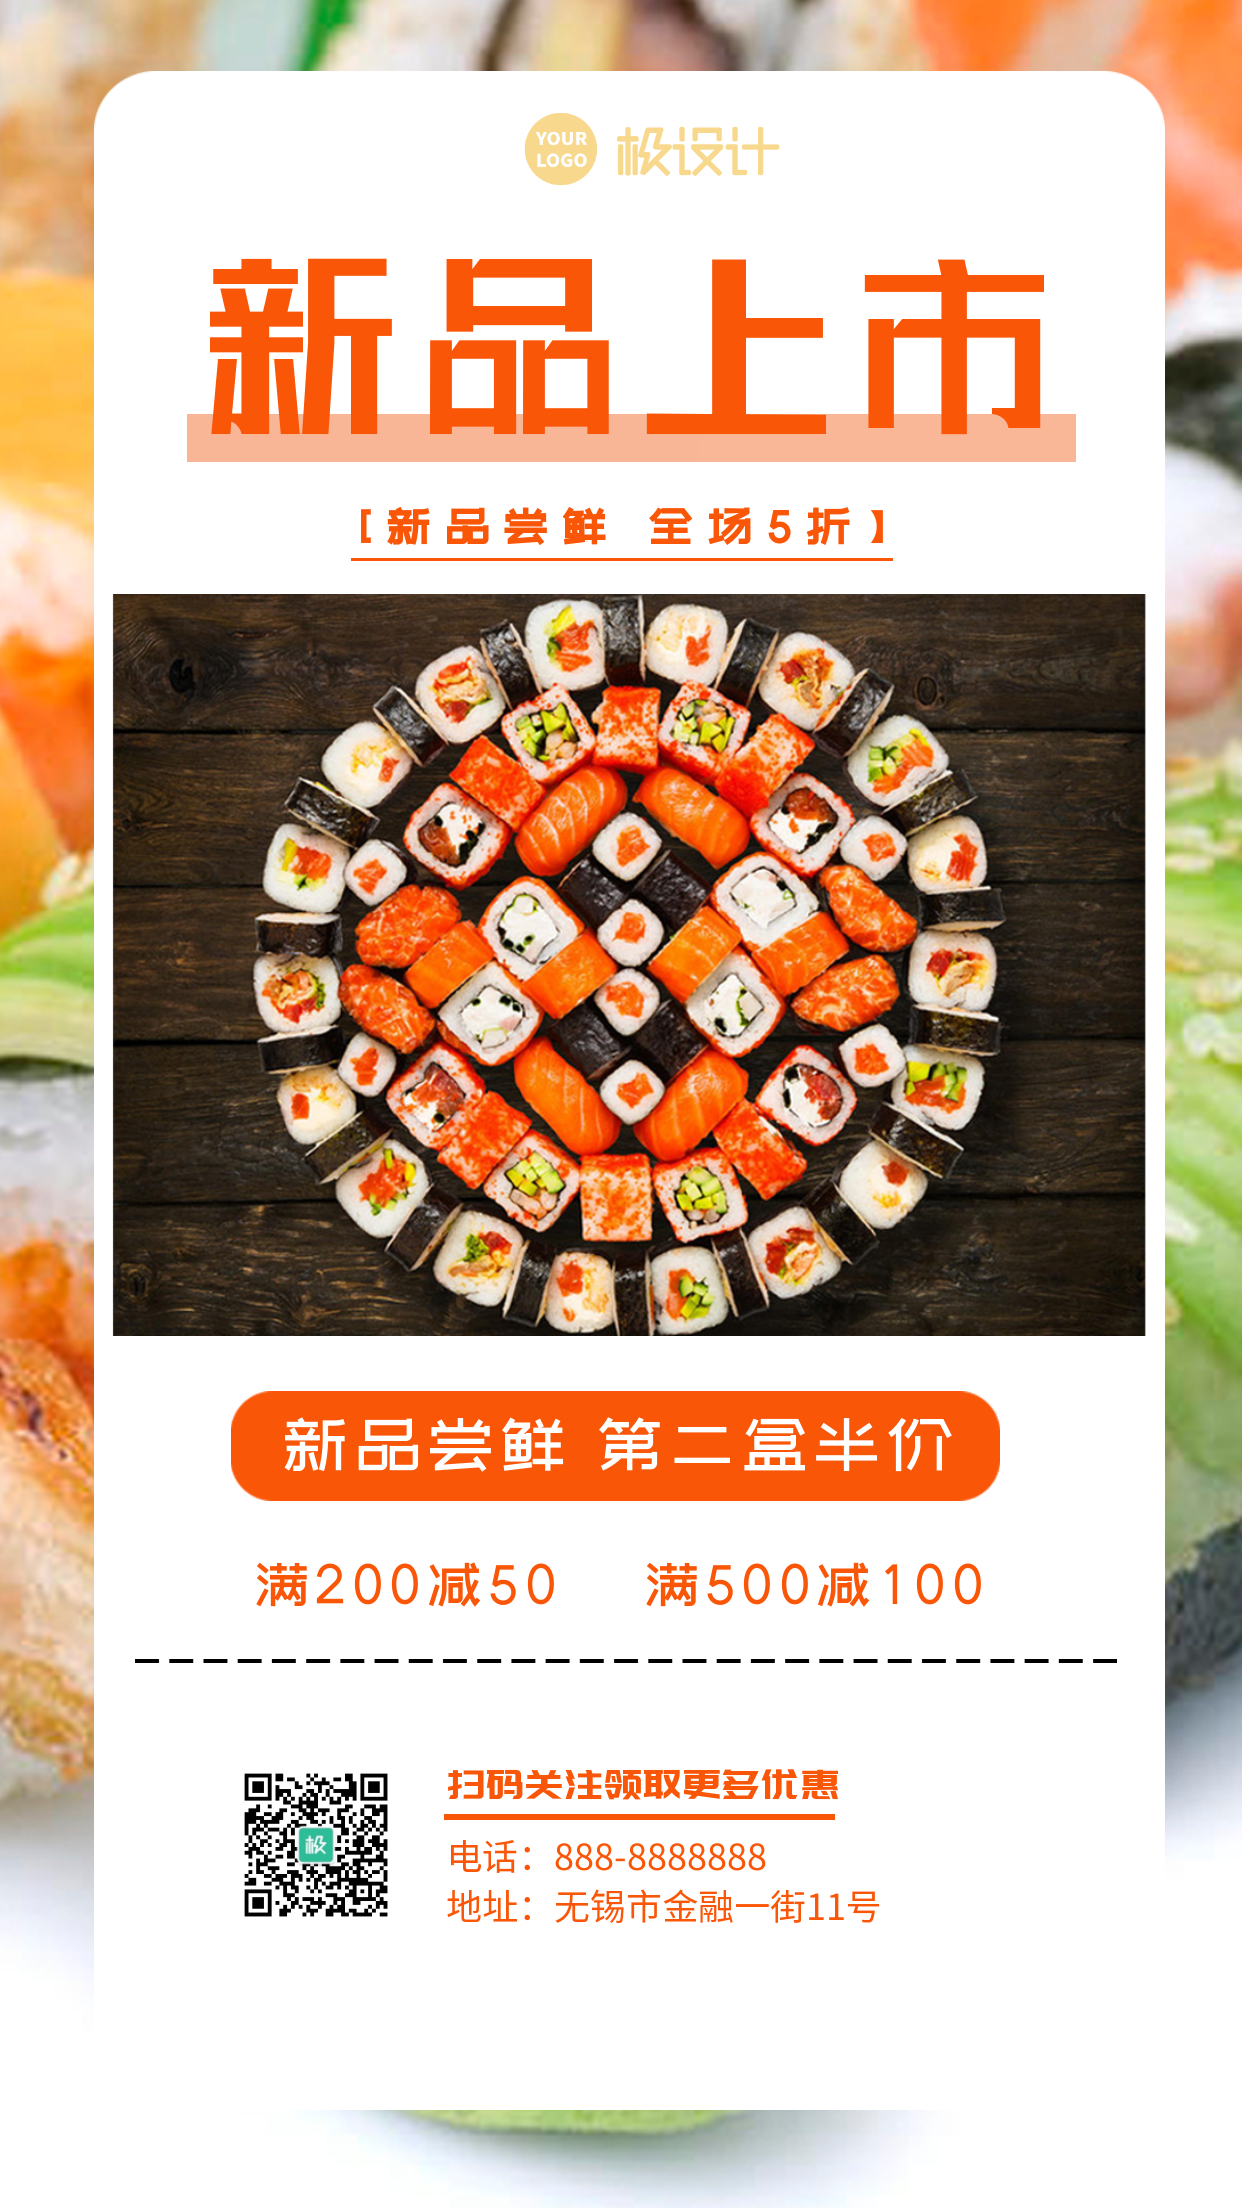 寿司新品上市五折尝鲜第二盒半价-竖